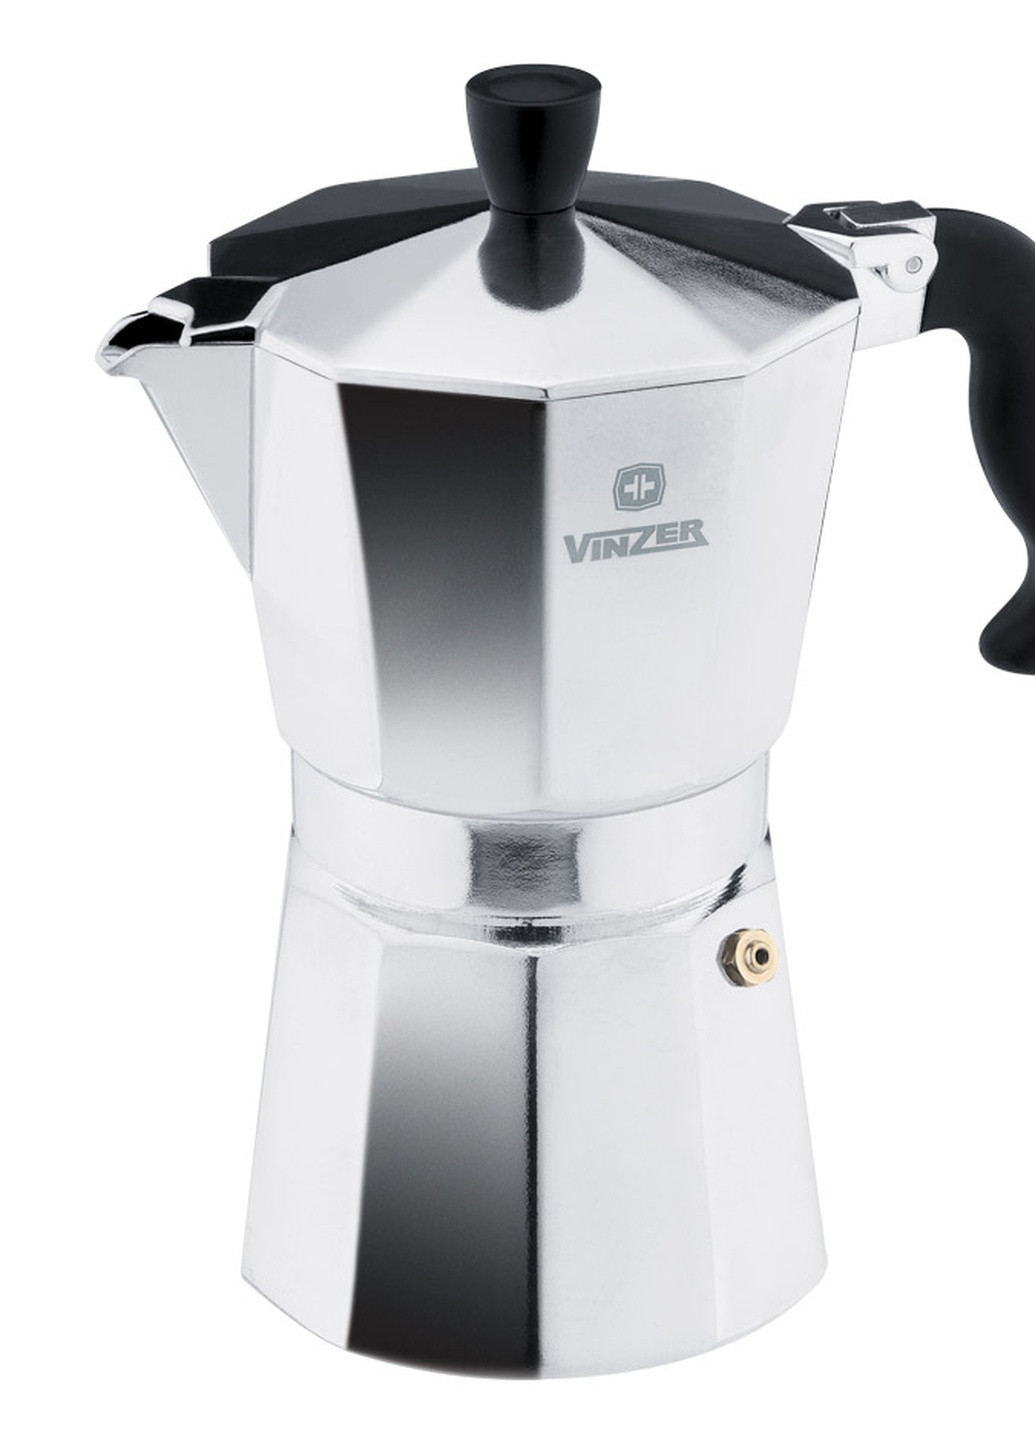 Кофеварка гейзерная Moka Espresso 9 чашек по 40 мл [89387] Vinzer (254026040)